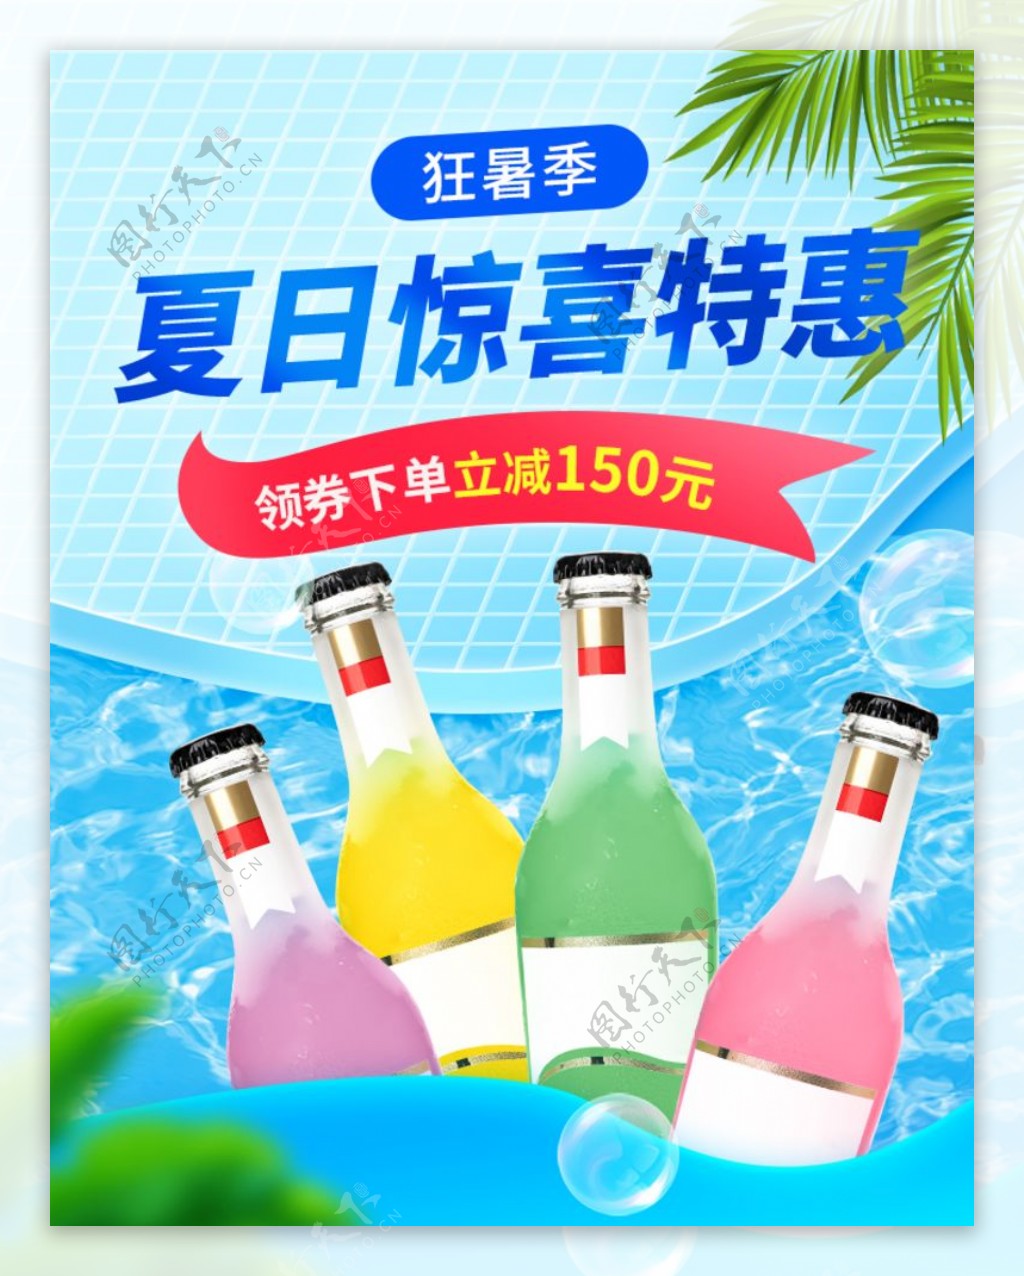 夏季鸡尾酒促销海报设计模板